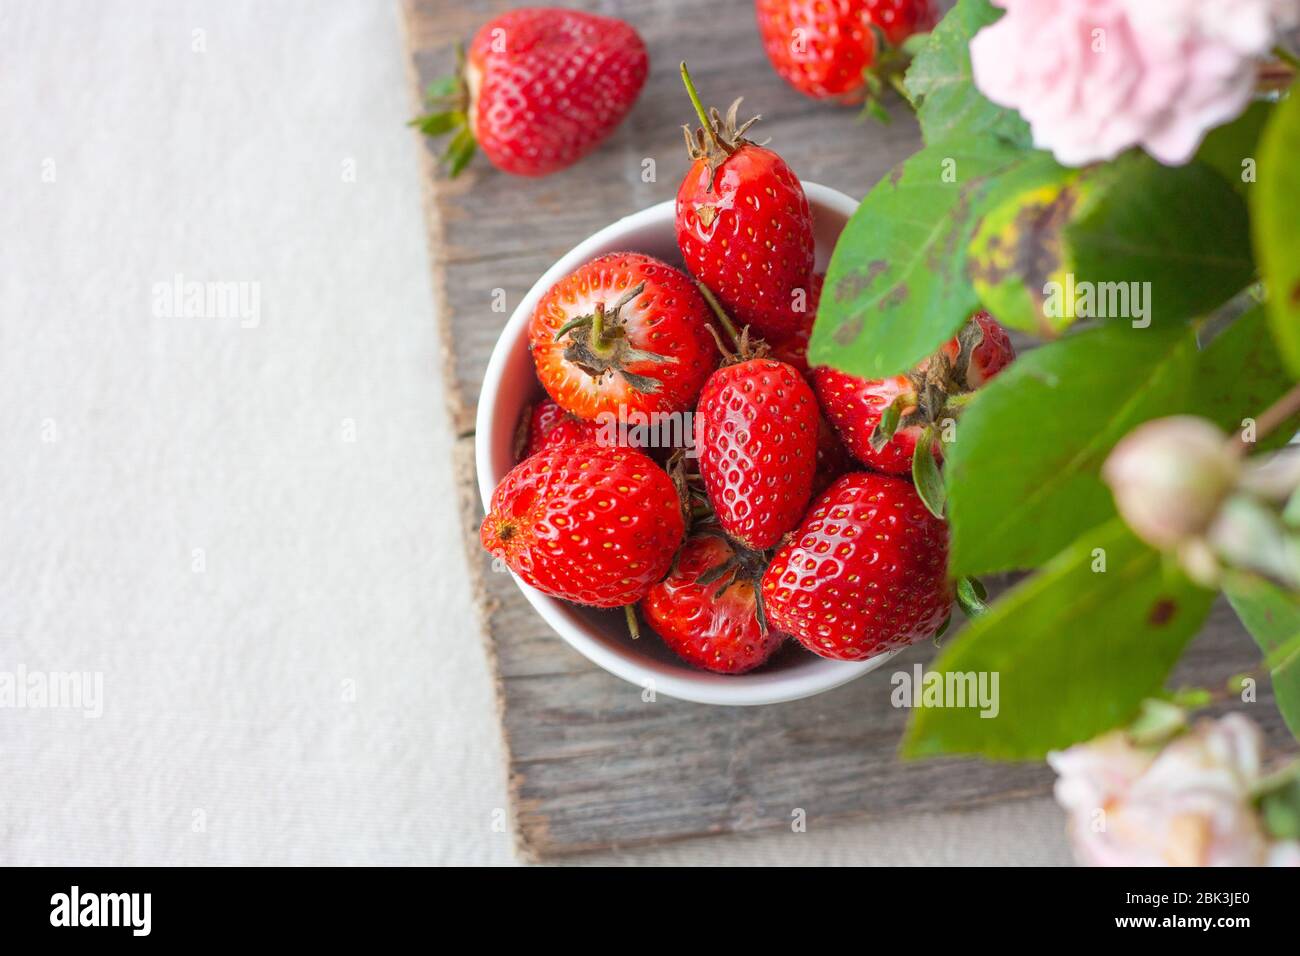 Obstschale voll mit frischen, roten, juckigen Erdbeeren auf Holztisch. Pastellfarbene Dekoration mit Blumenarrangement und Platz für Text. Draufsicht. Stockfoto